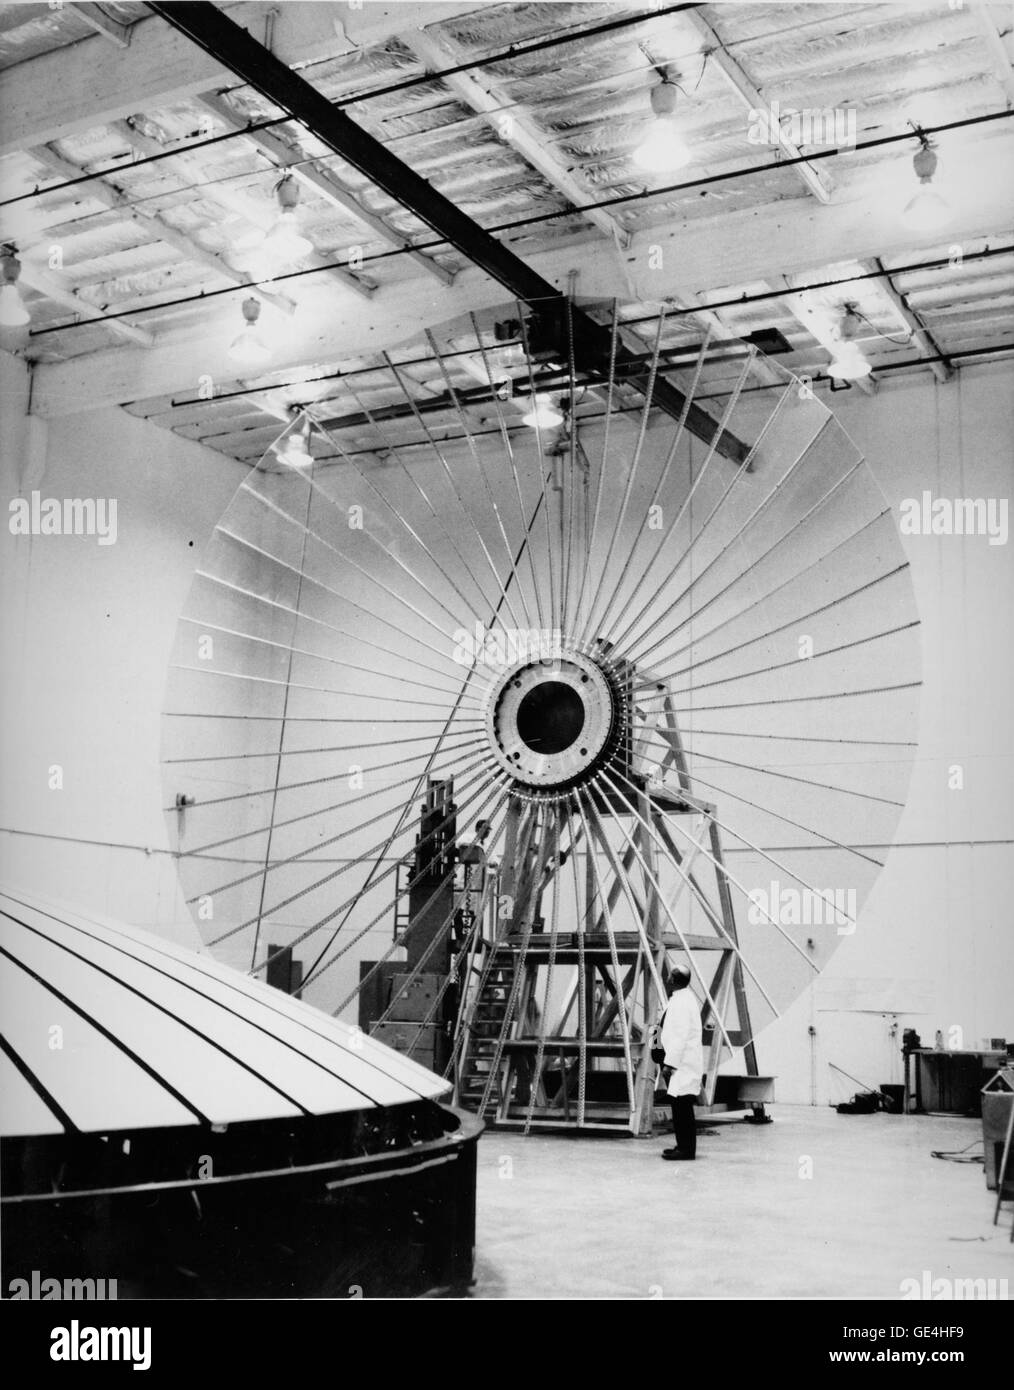 (13 Oktober 1972) "Space Flower" war der erste der 9 Meter (30 Fuß) Durchmesser Antennen für die Anwendung Technologie Satelliten (ATS). Das ATS-Programm wurde im Jahr 1966 zum Nachweis der Machbarkeit und Leistungsfähigkeit der Platzierung eines Satelliten auf einer geostationären Umlaufbahn (geostationäre) über einer festen Position auf der Erdoberfläche initiiert. Die Untertasse-förmigen Antenne, gebaut am Lockheed Missiles and Space Co., Sunnyvale, Kalifornien, bestehen aus Aluminium-Rippen und Dacron-Mesh, das Kupfer plattiert und mit Silikon beschichtet. Auch ist die Form, die das Netz an die flexible ri angenäht ist Stockfoto